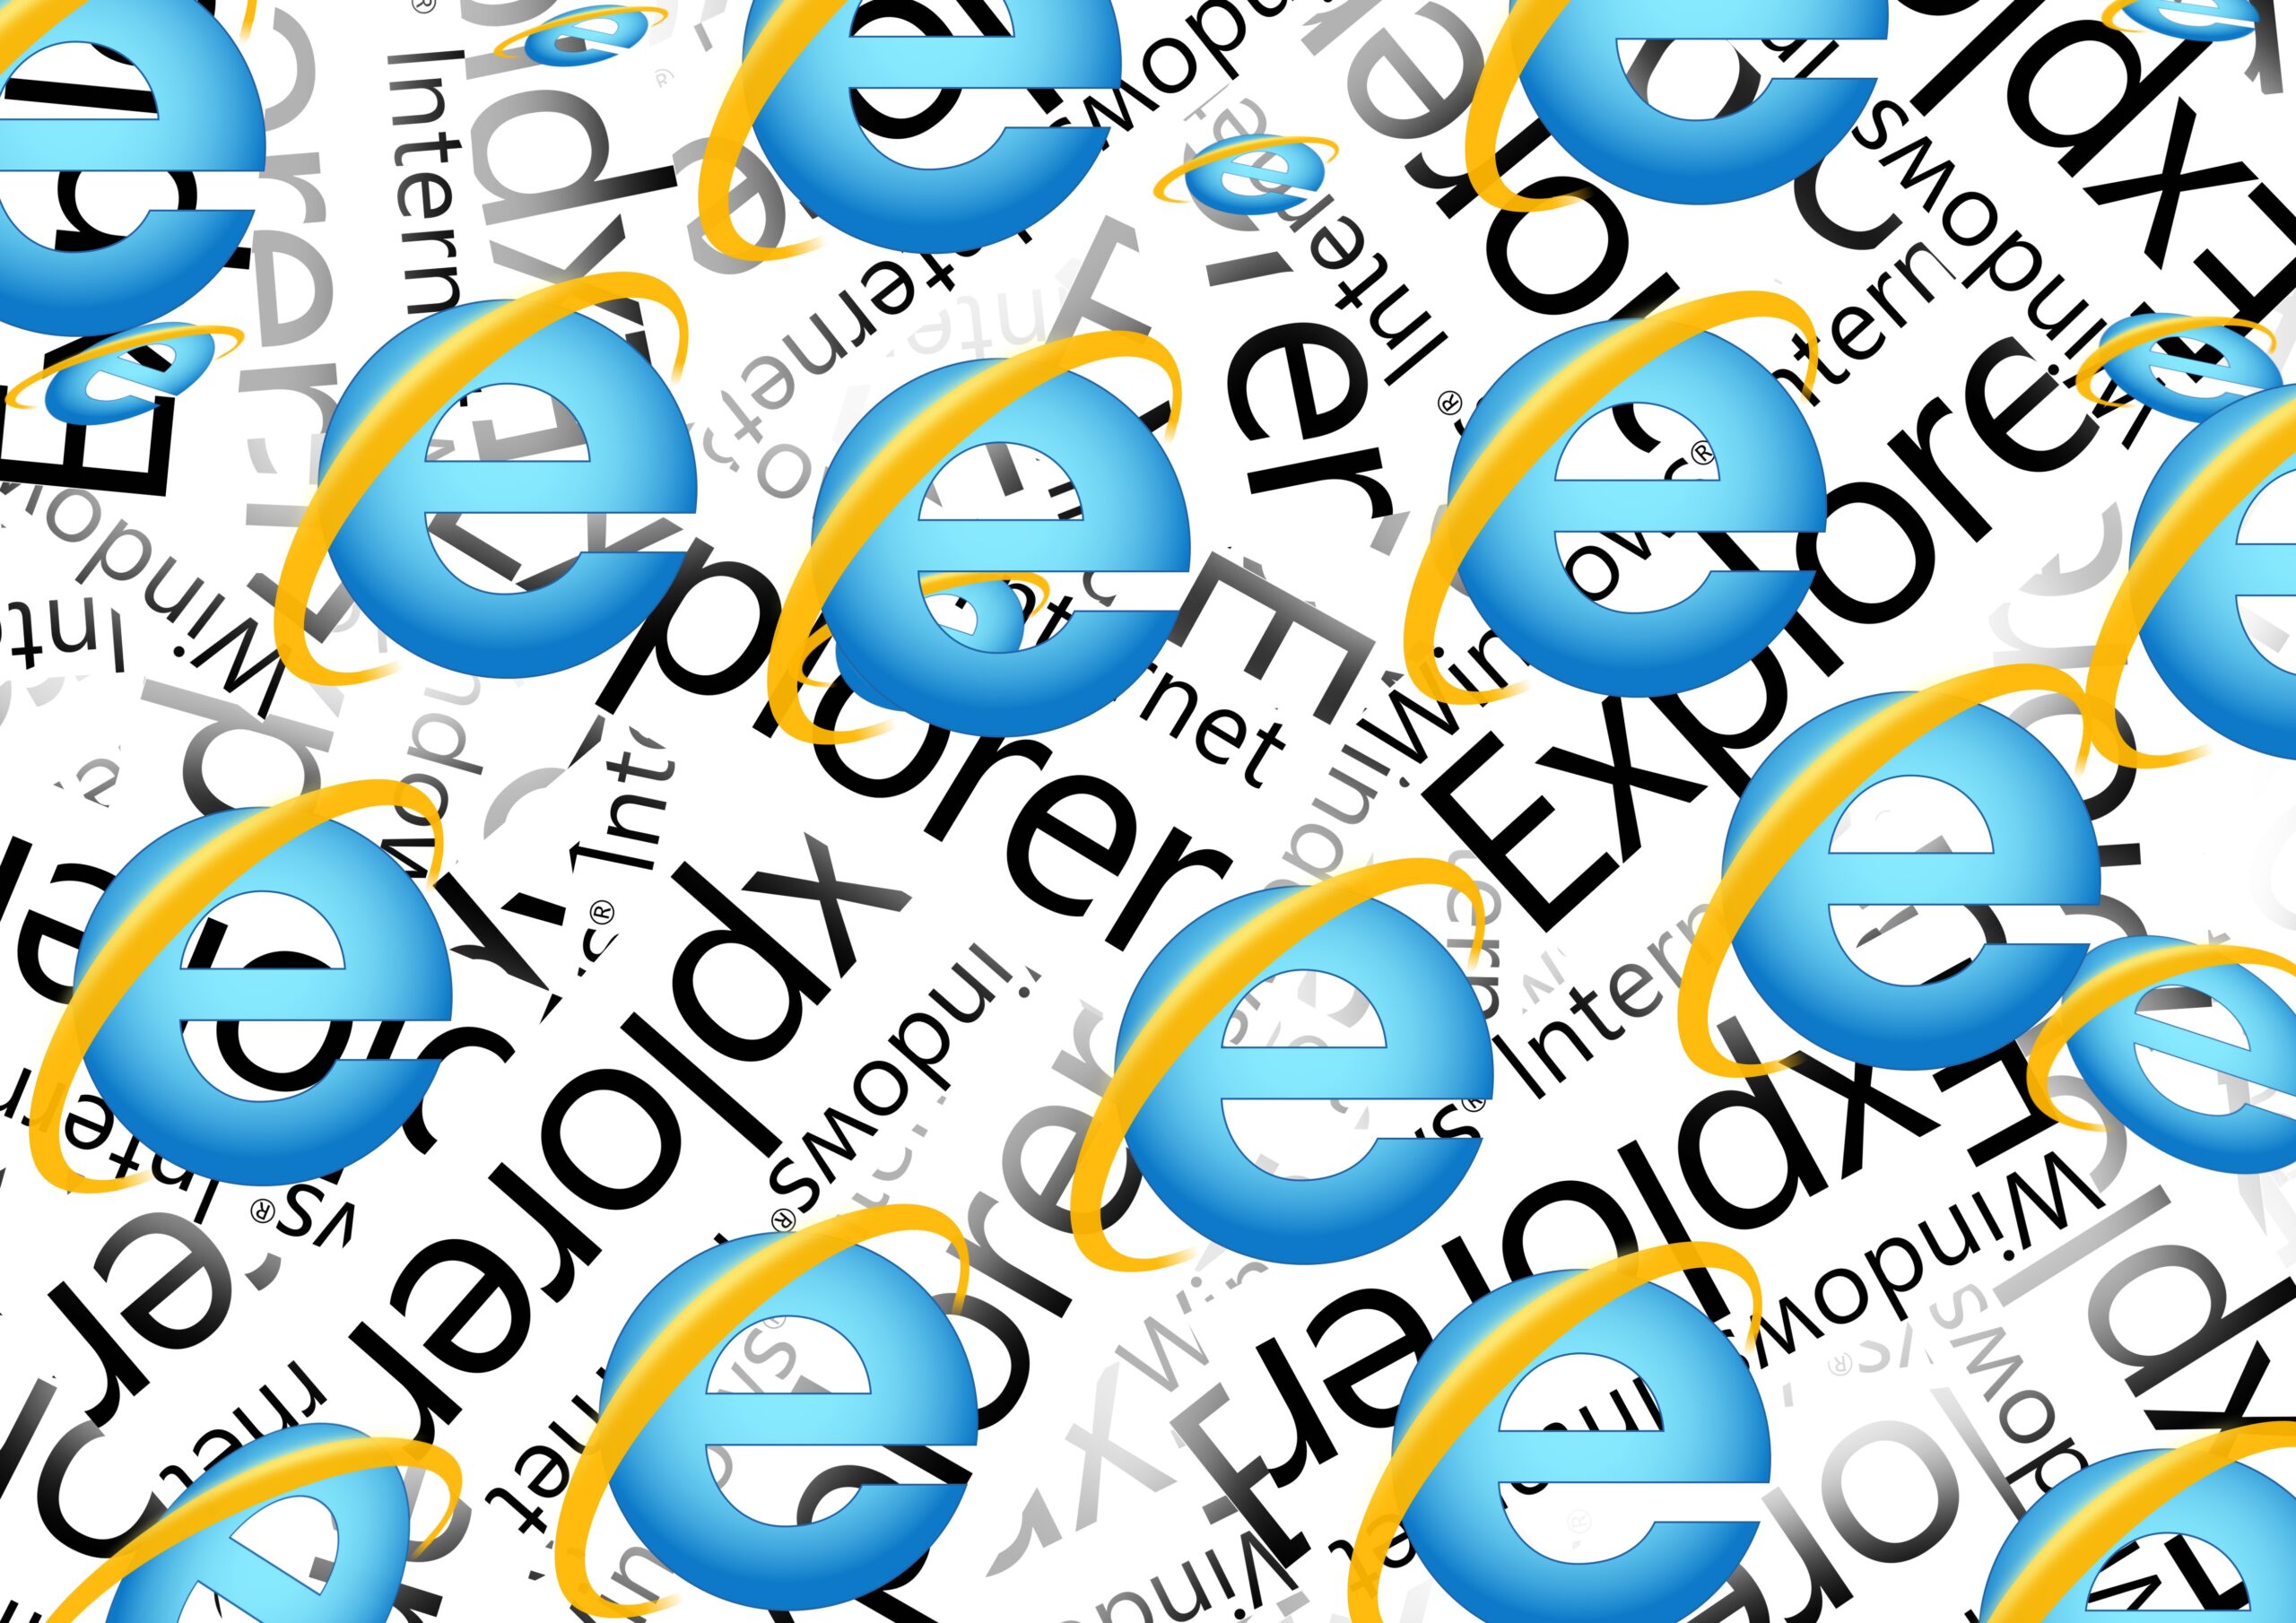 internet explorer browser logo scattered